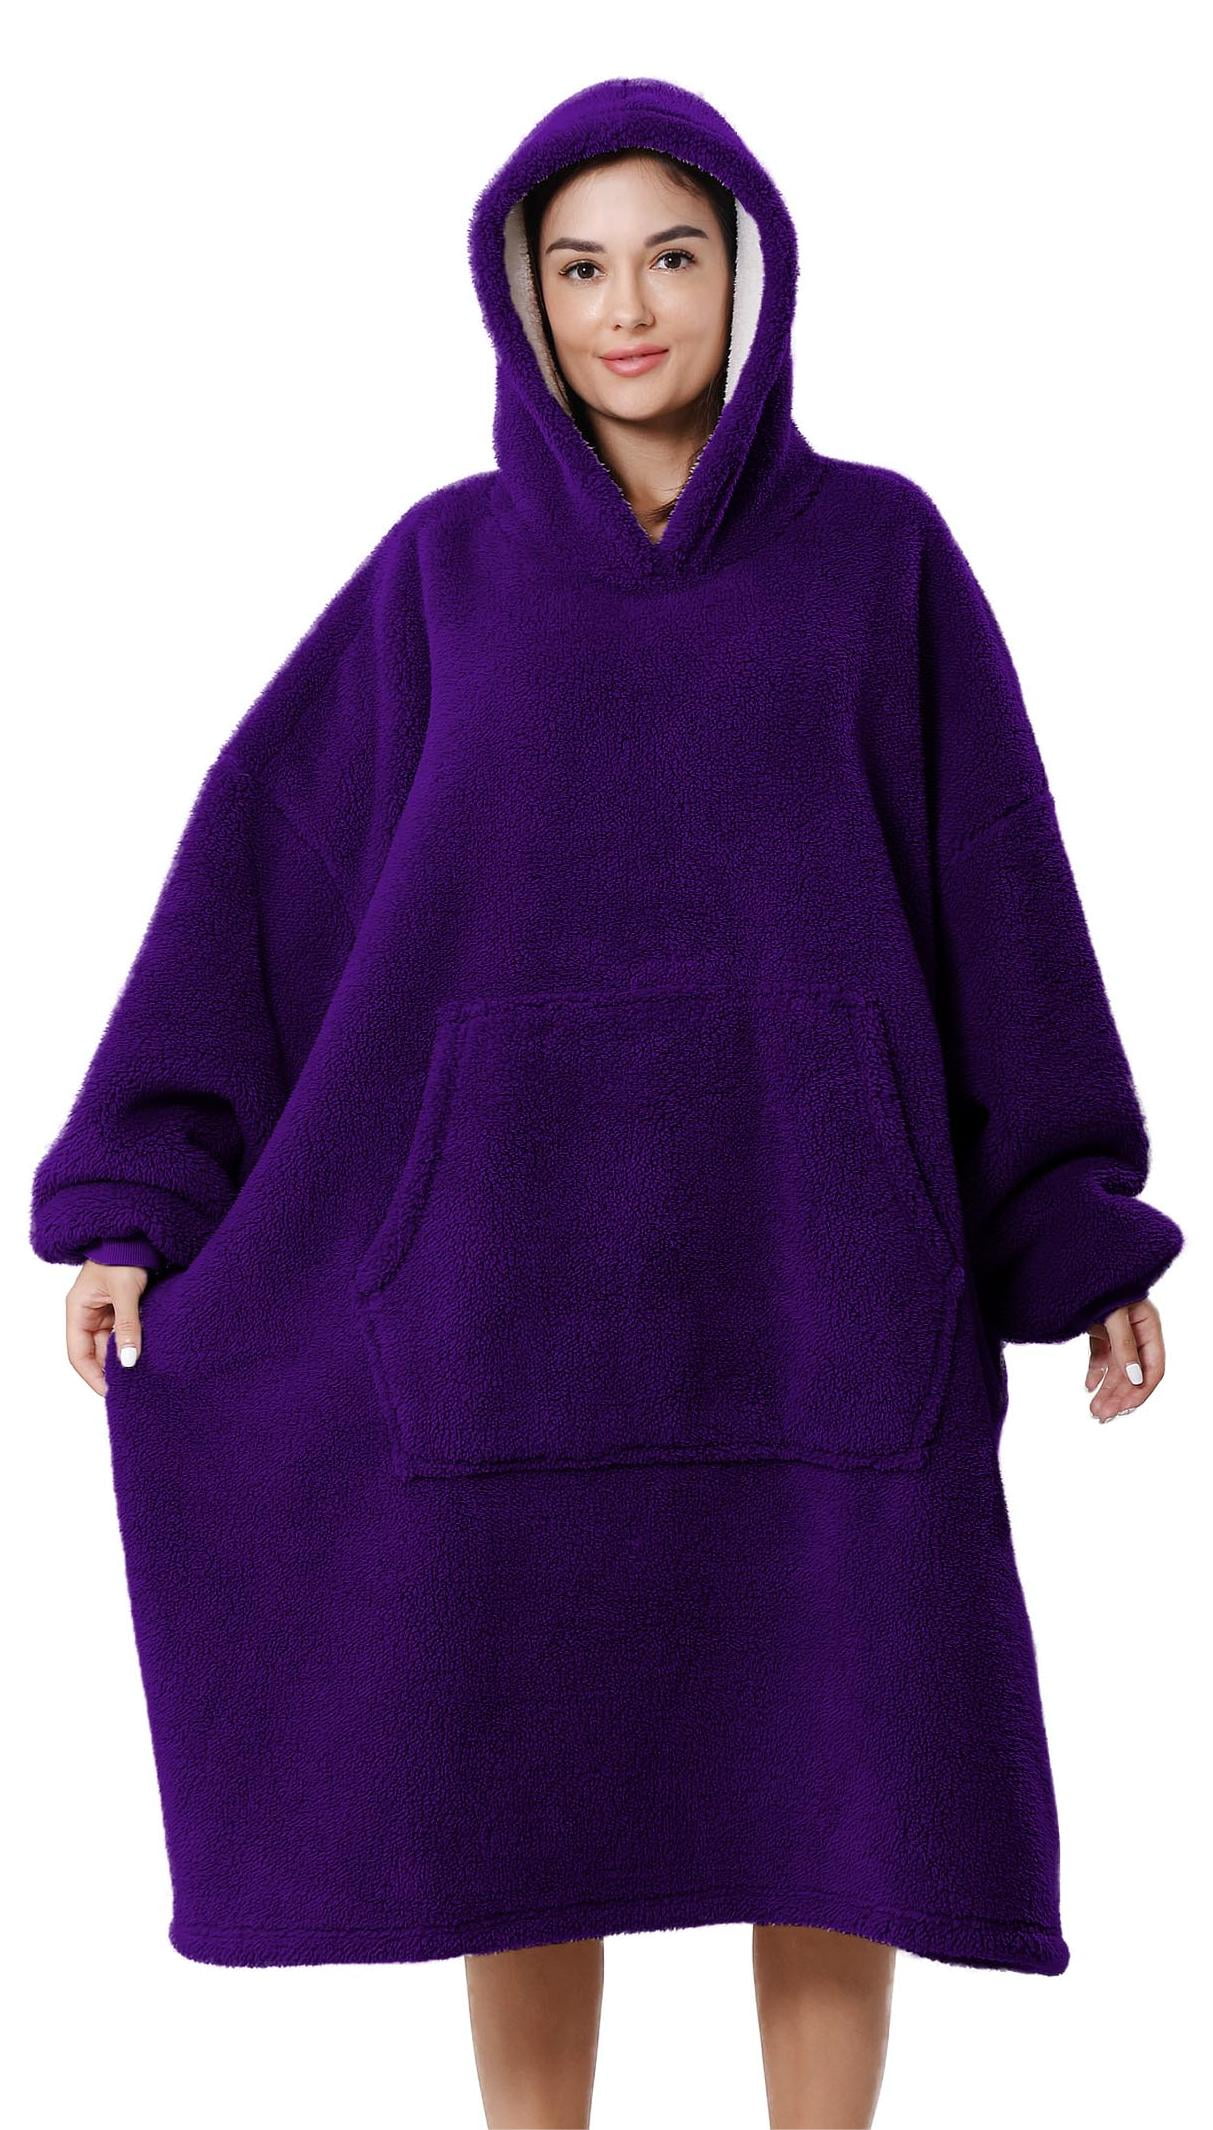 Wearable Blanket, LOFIR Blanket Hoodies, Soft Warm Fleece Wearable ...